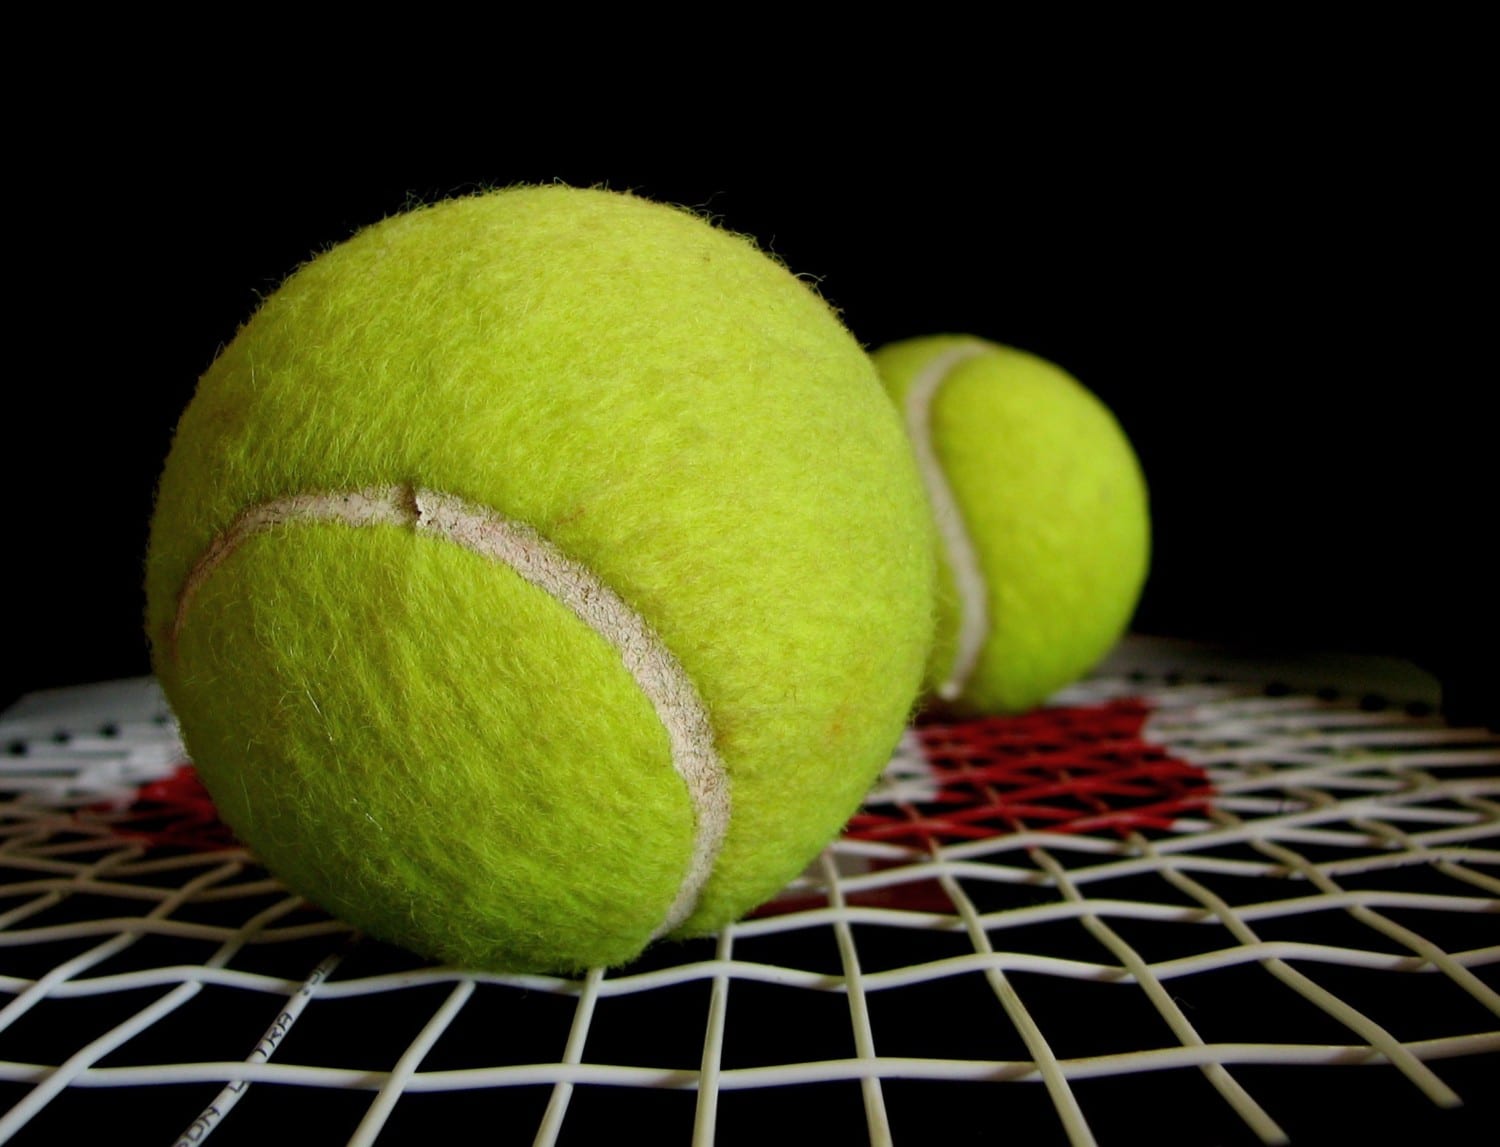 tennis ball photo